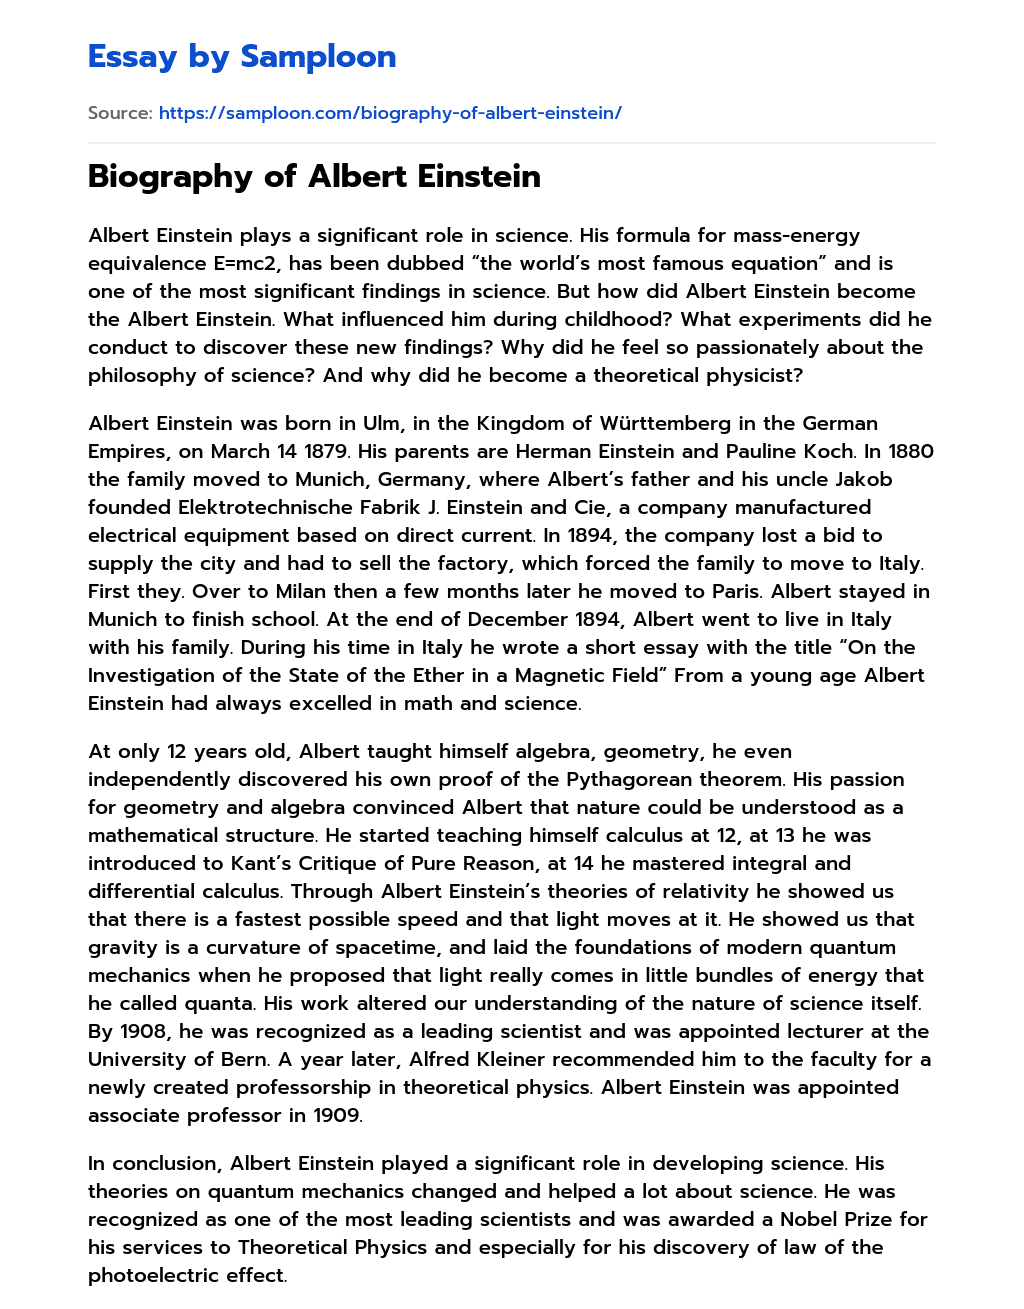 Biography of Albert Einstein essay